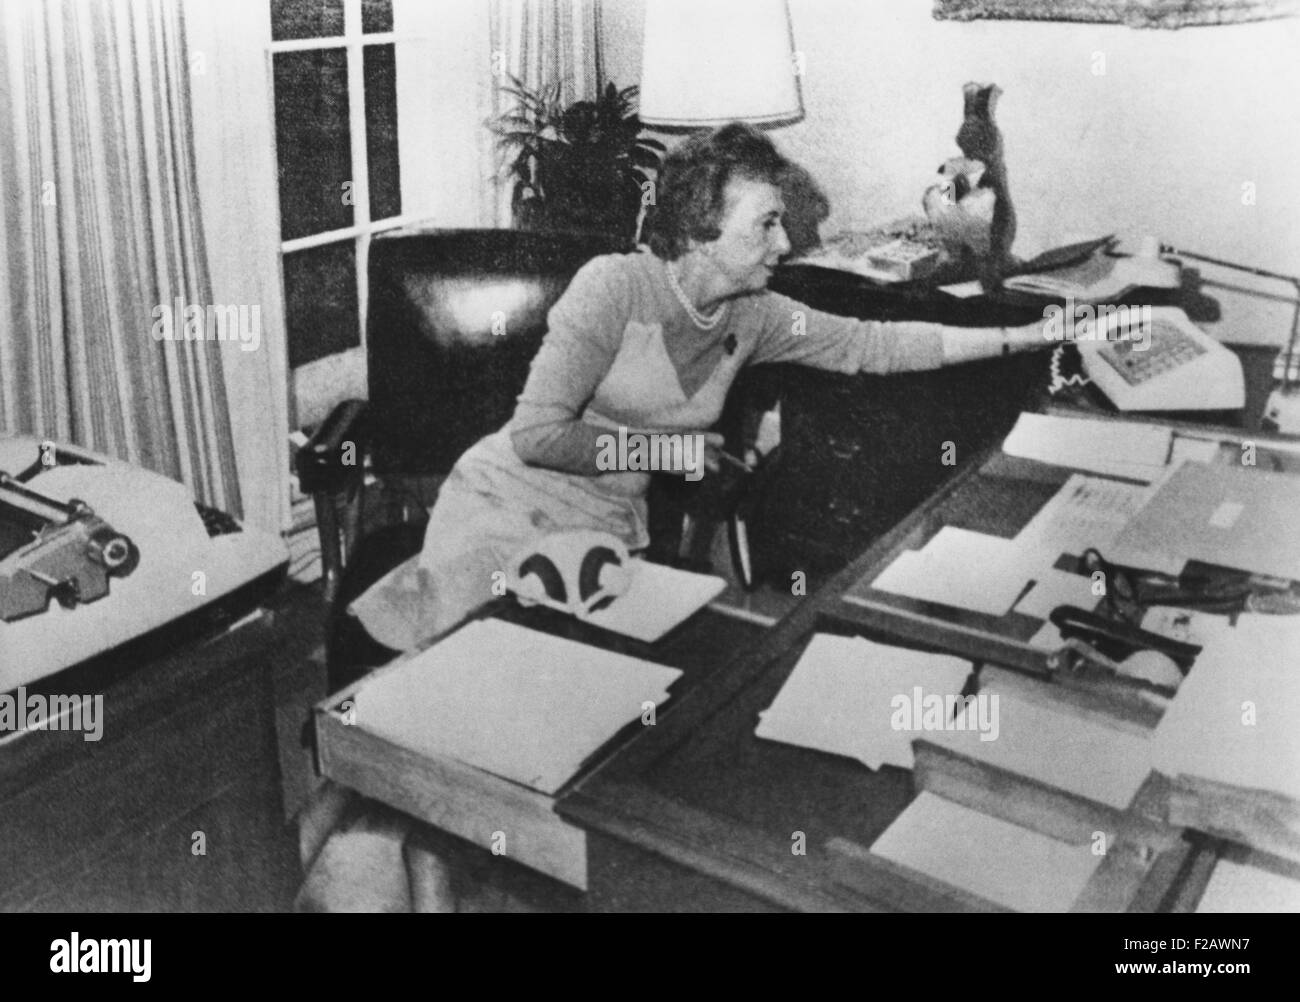 Rosemary Woods, secretario personal del presidente Nixon, demostrando la "Rosa María" Stretch. Fotógrafos mostró cómo ella puede haber causado el 18 1/2 minutos en una crucial diferencia Junio 20, 1972 La cinta de Watergate. Ca. De enero de 1974. (CSU 2015 11 1286) Foto de stock